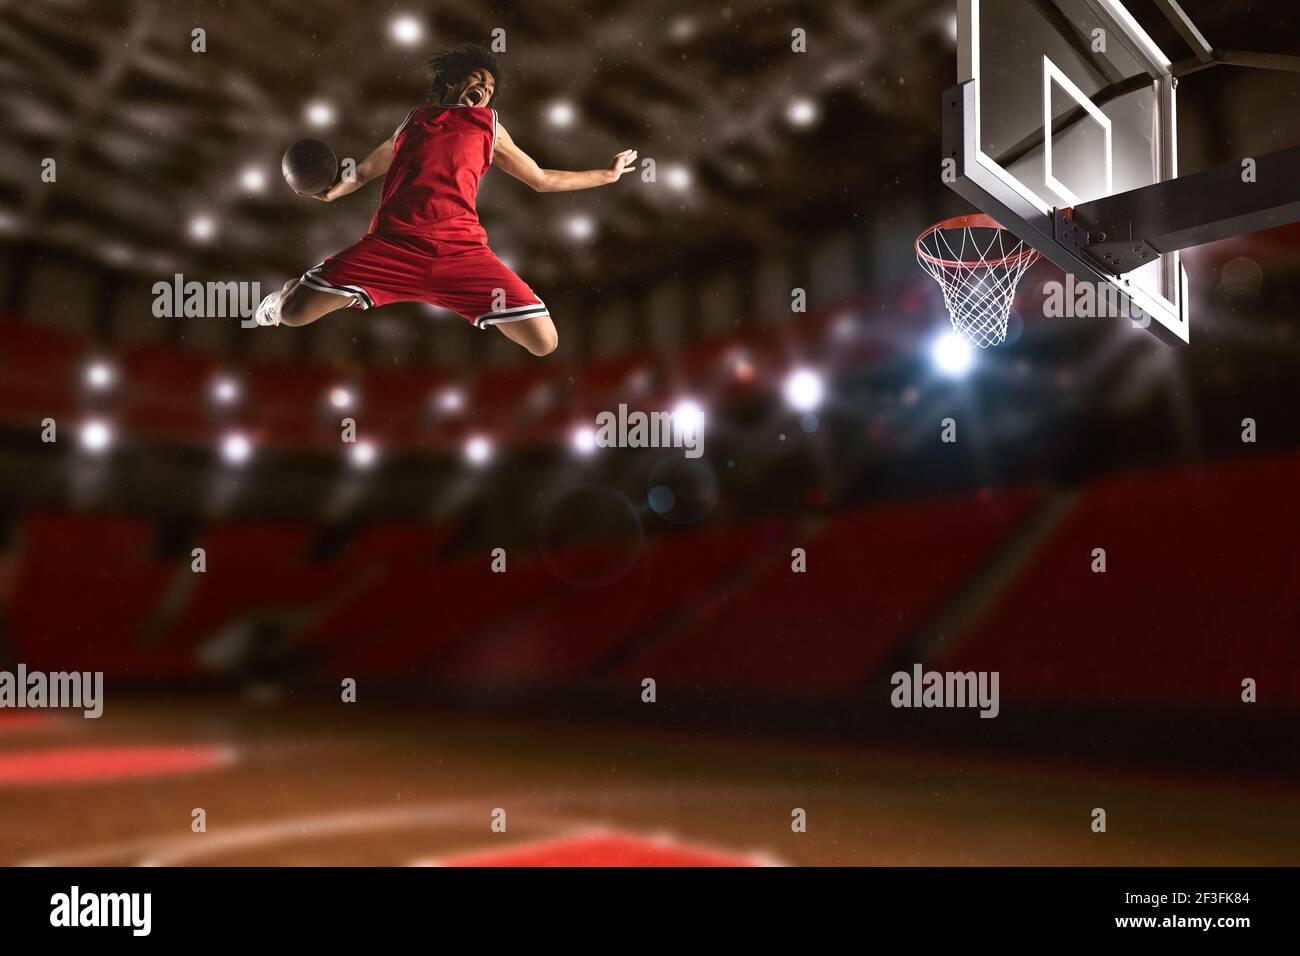 Juego de baloncesto con un jugador de salto alto para hacer un slam en la cesta Foto de stock